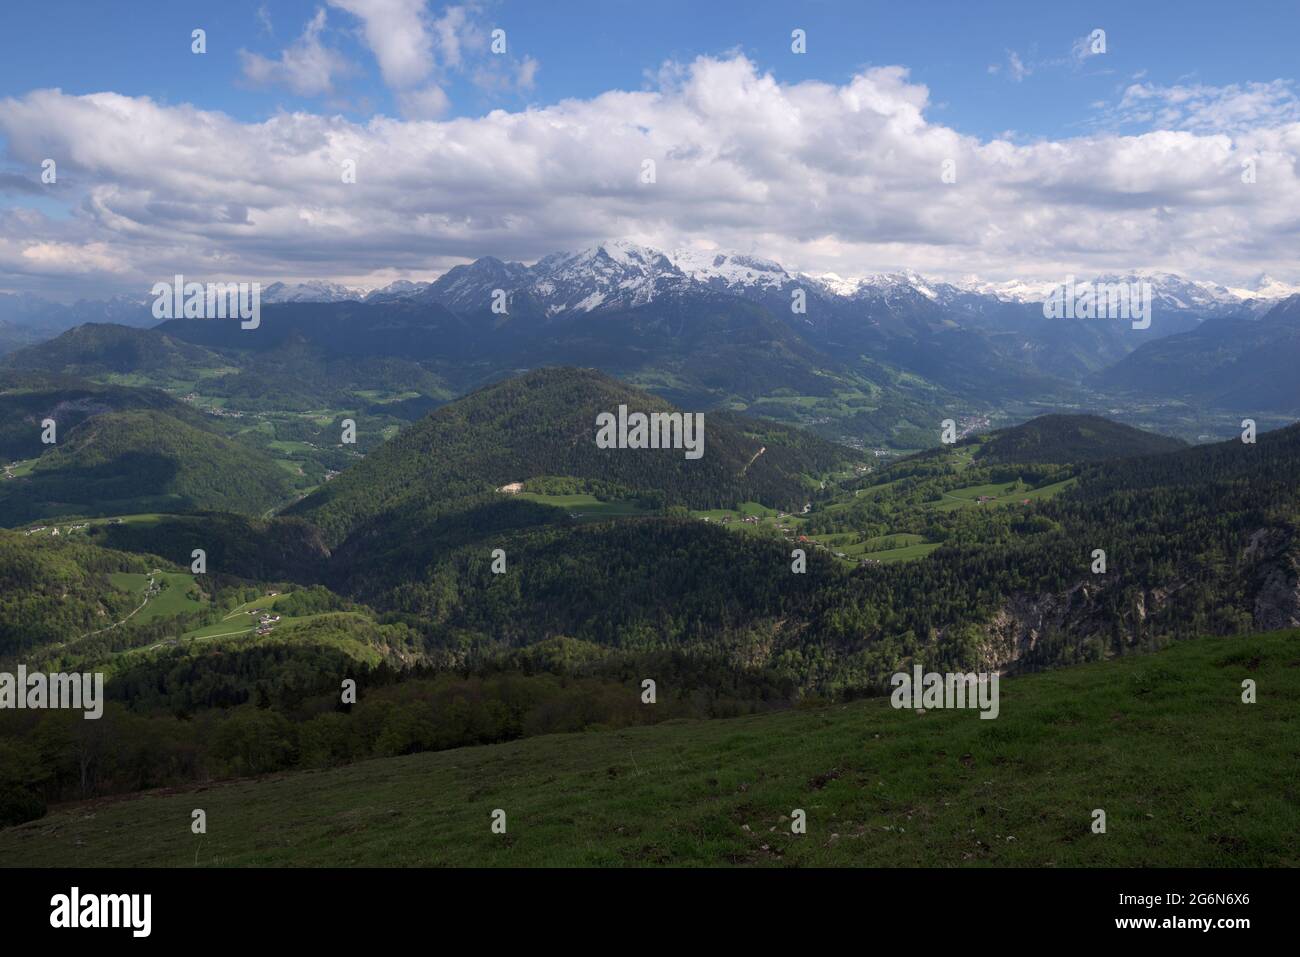 Vue panoramique sur la montagne avec Kehlstein, Hoher Göll, Hohes Brett et d'autres vues depuis la cabane de montagne Scheibenalm, Berchtesgaden, Bavière, Allemagne Banque D'Images